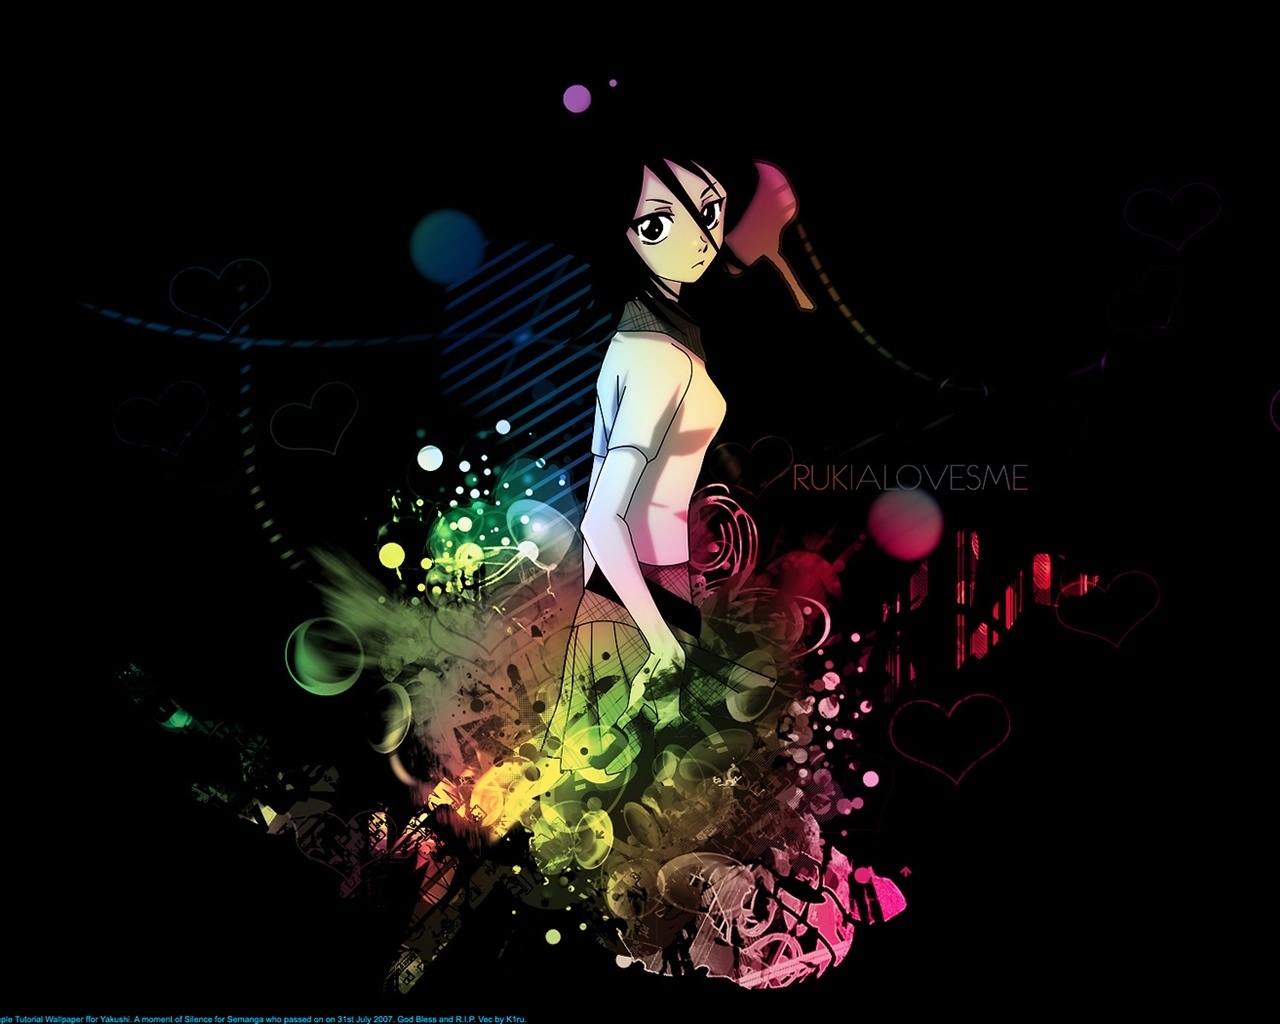 Bleach Rukia for 1280 x 1024 resolution